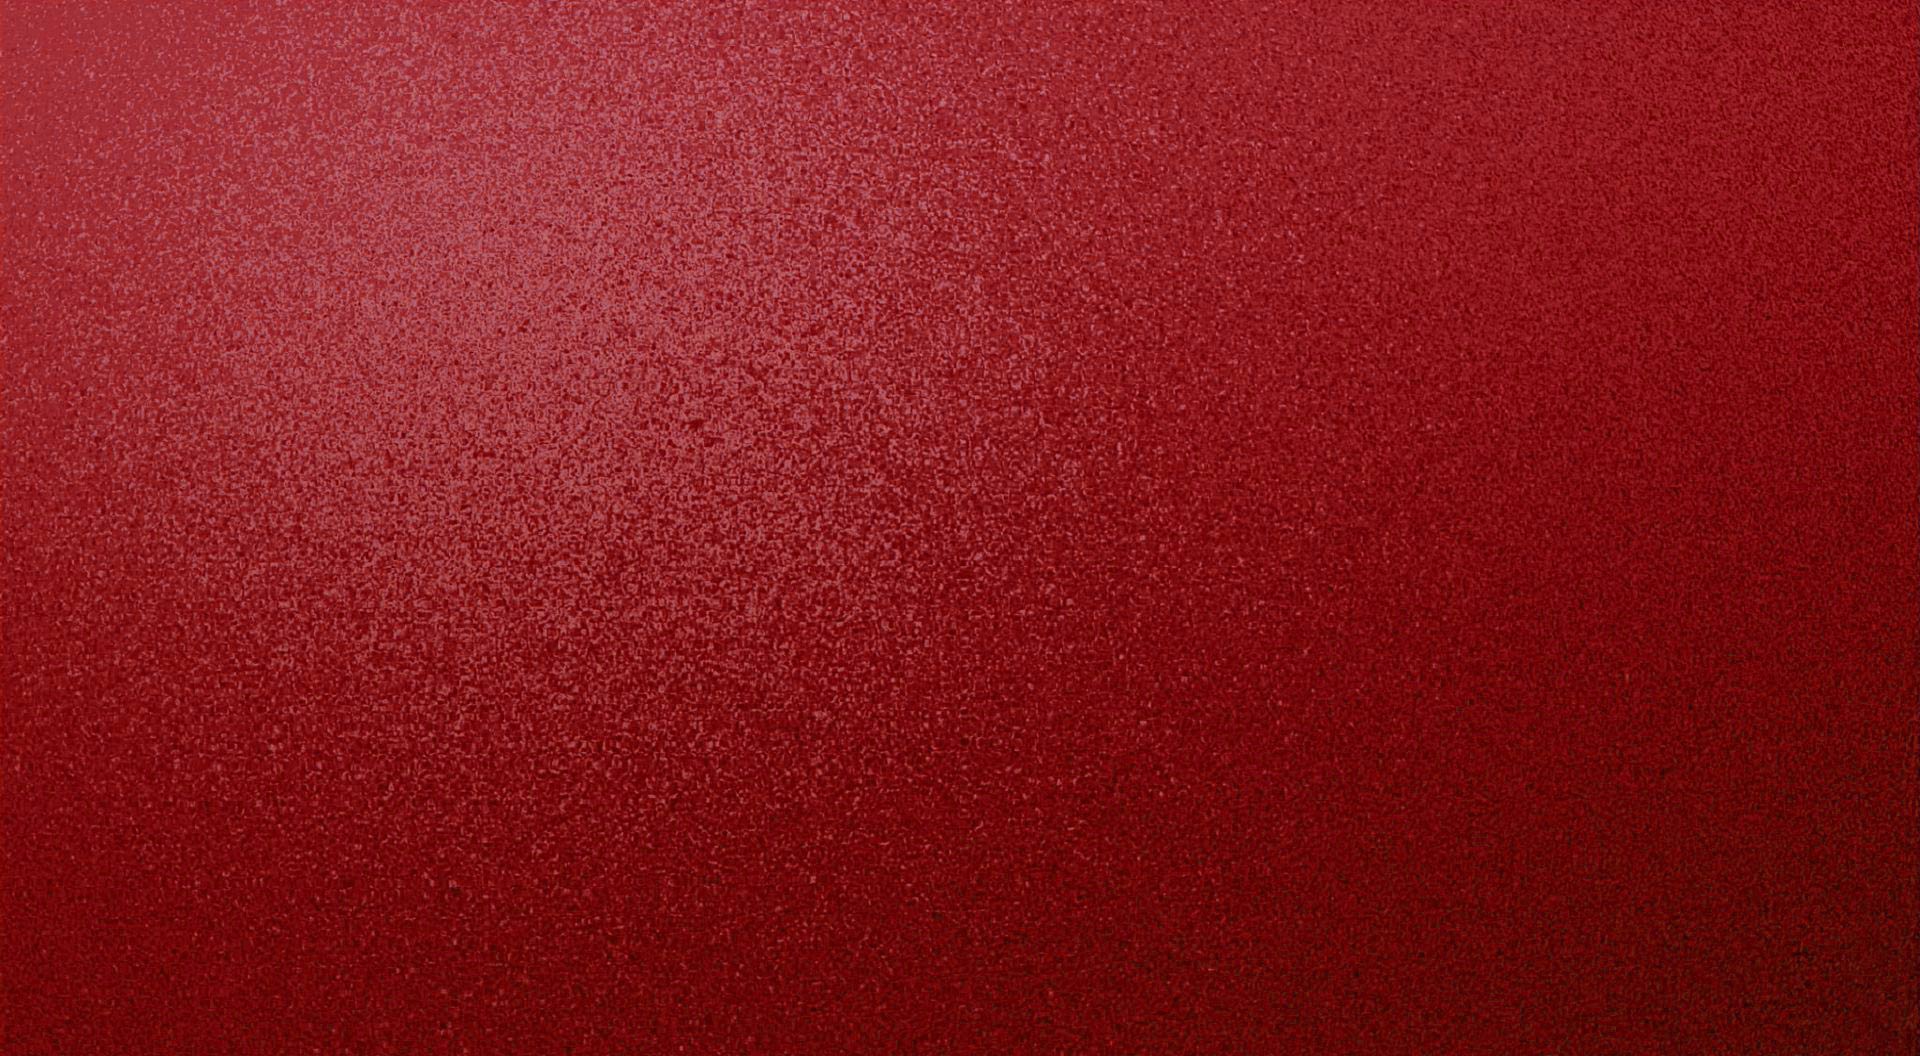 Red Wallpaper Texture 3 Background. Wallruru